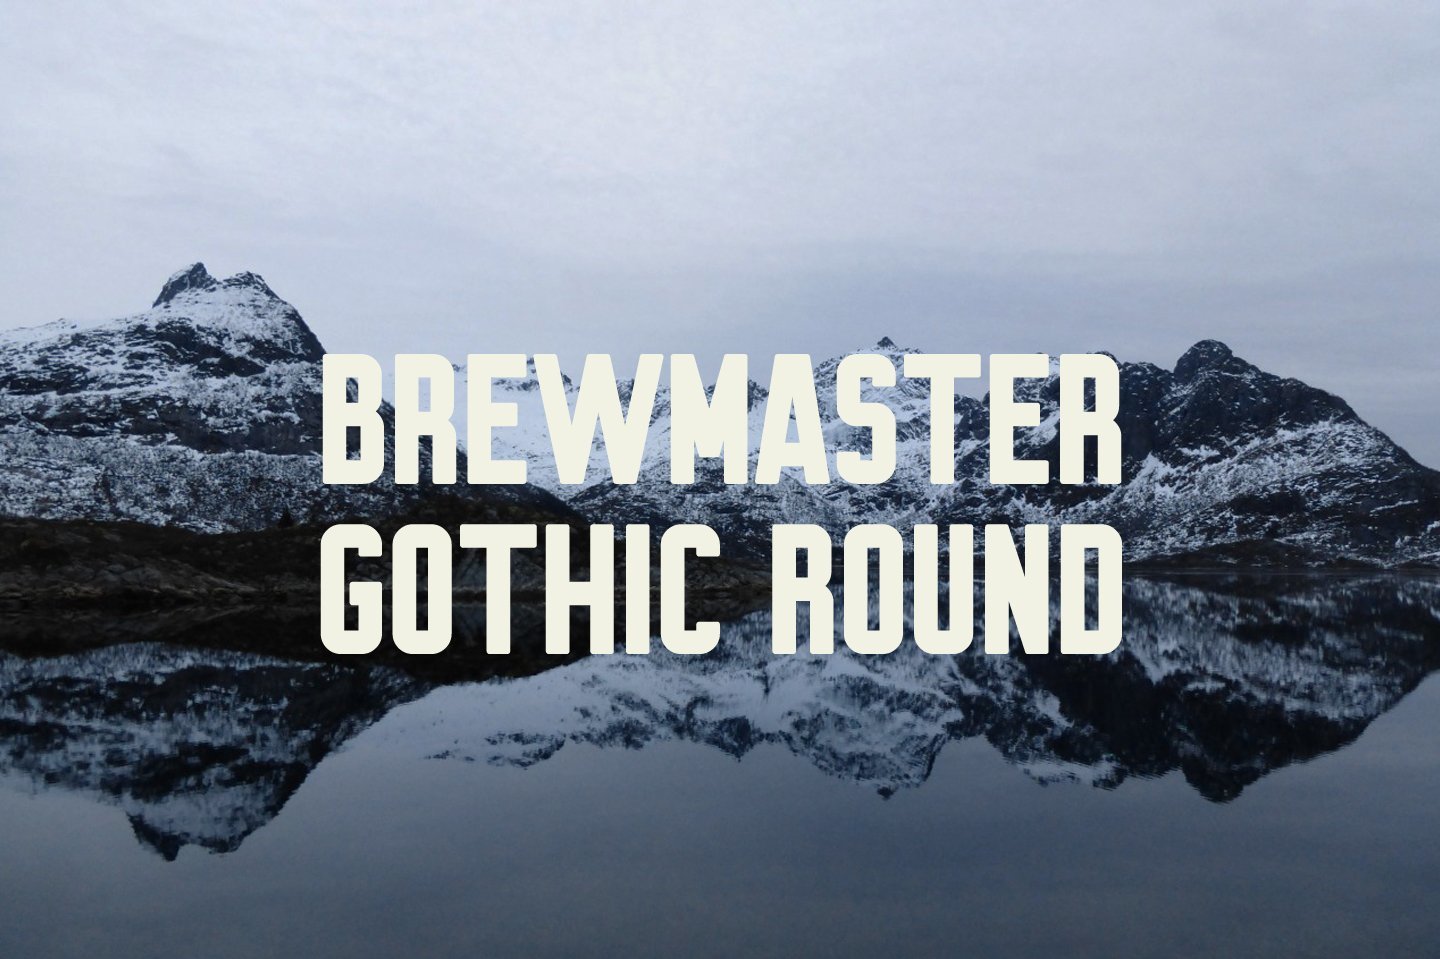 Brewmaster Gothic Round